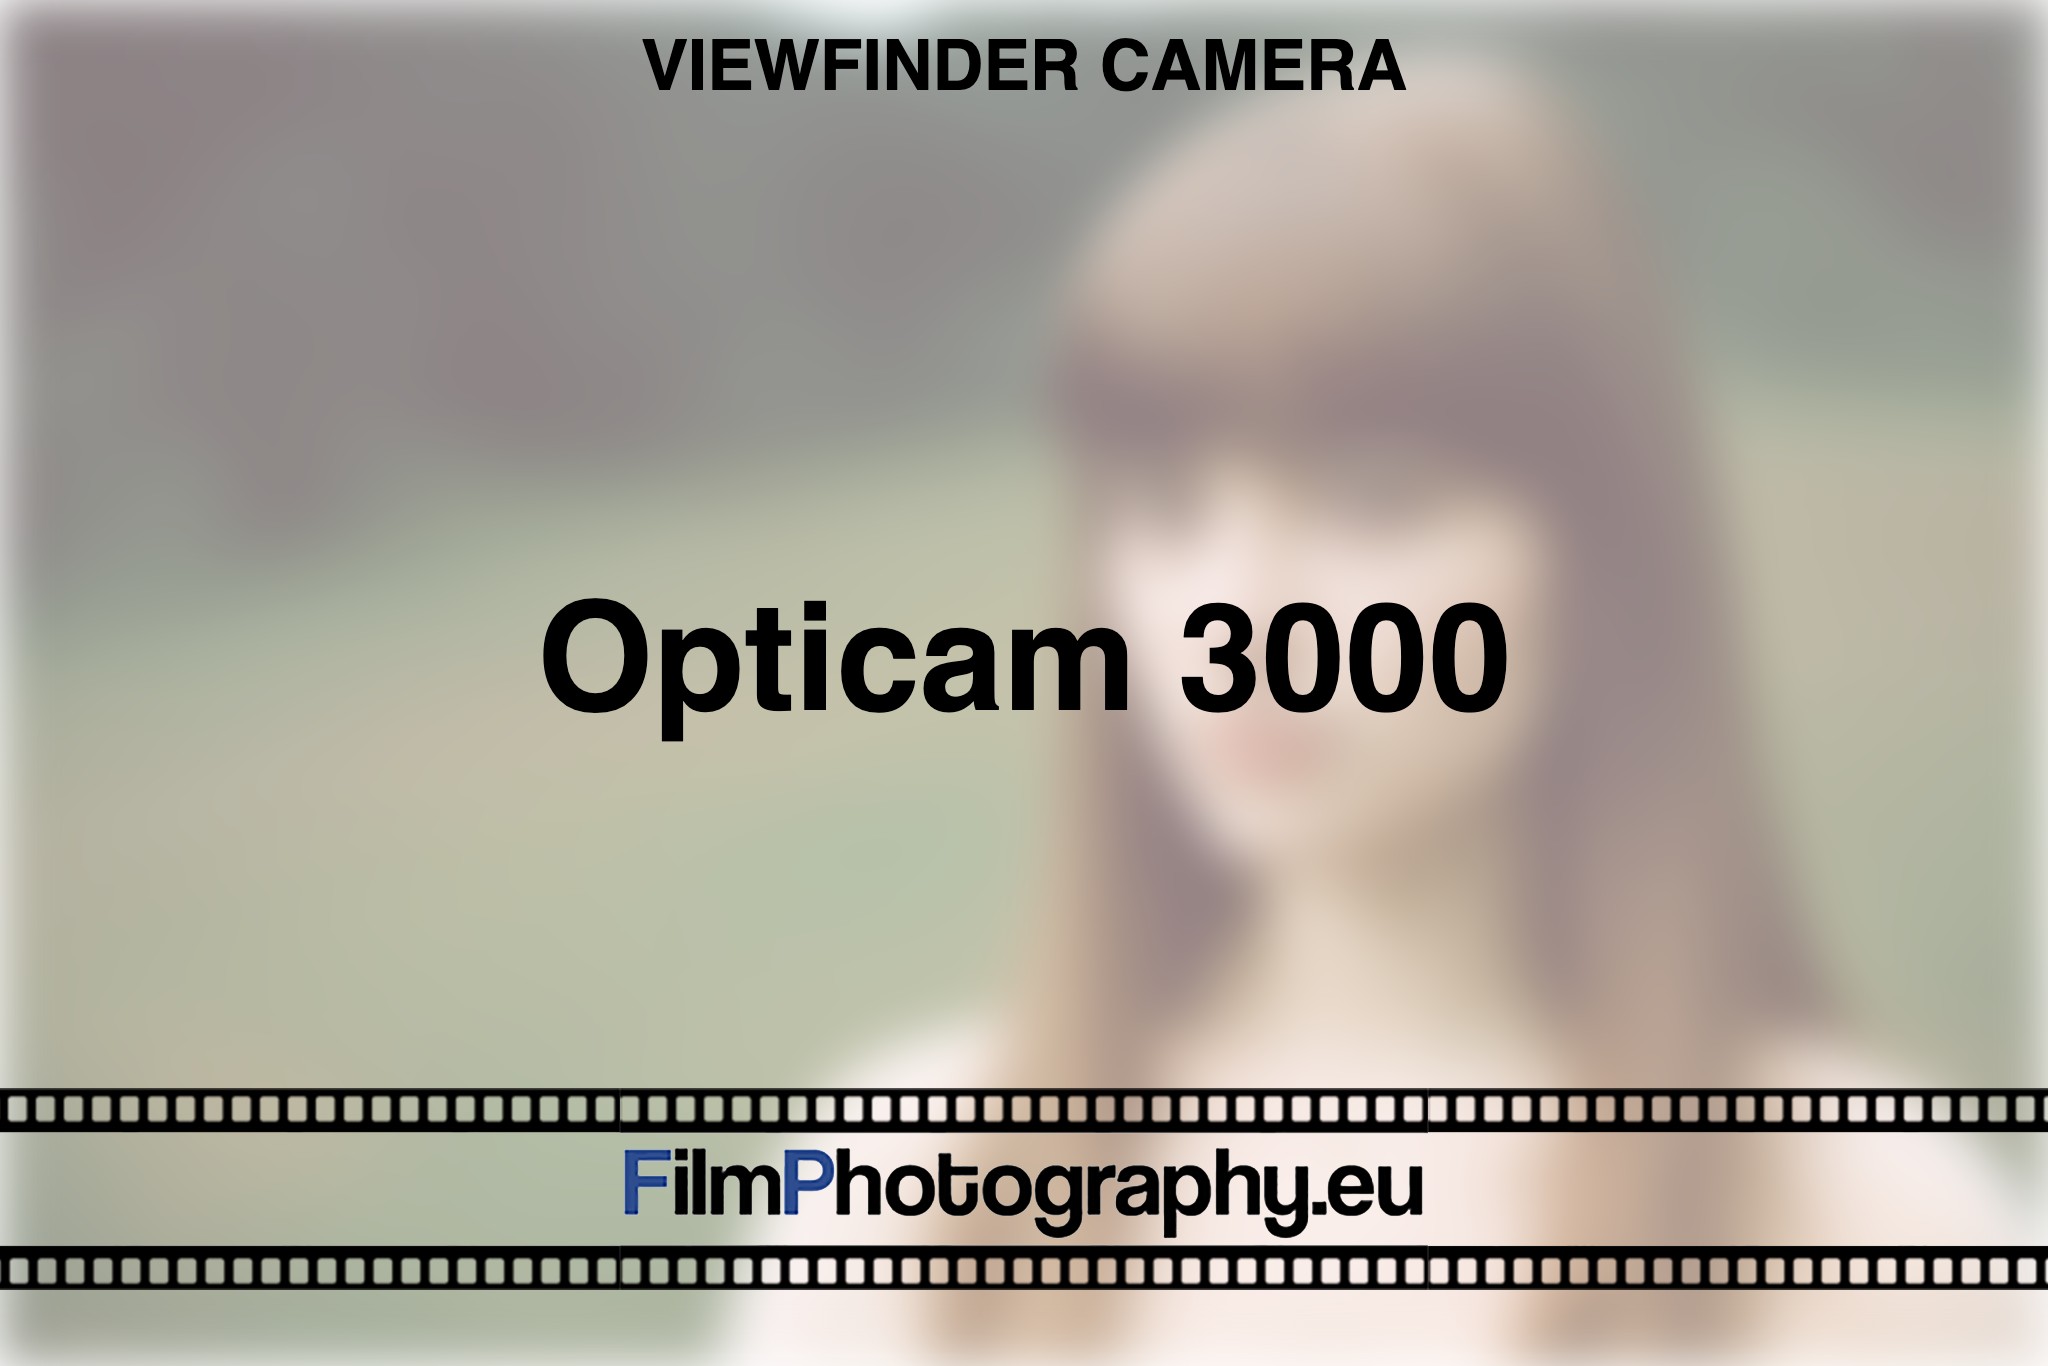 opticam-3000-viewfinder-camera-bnv